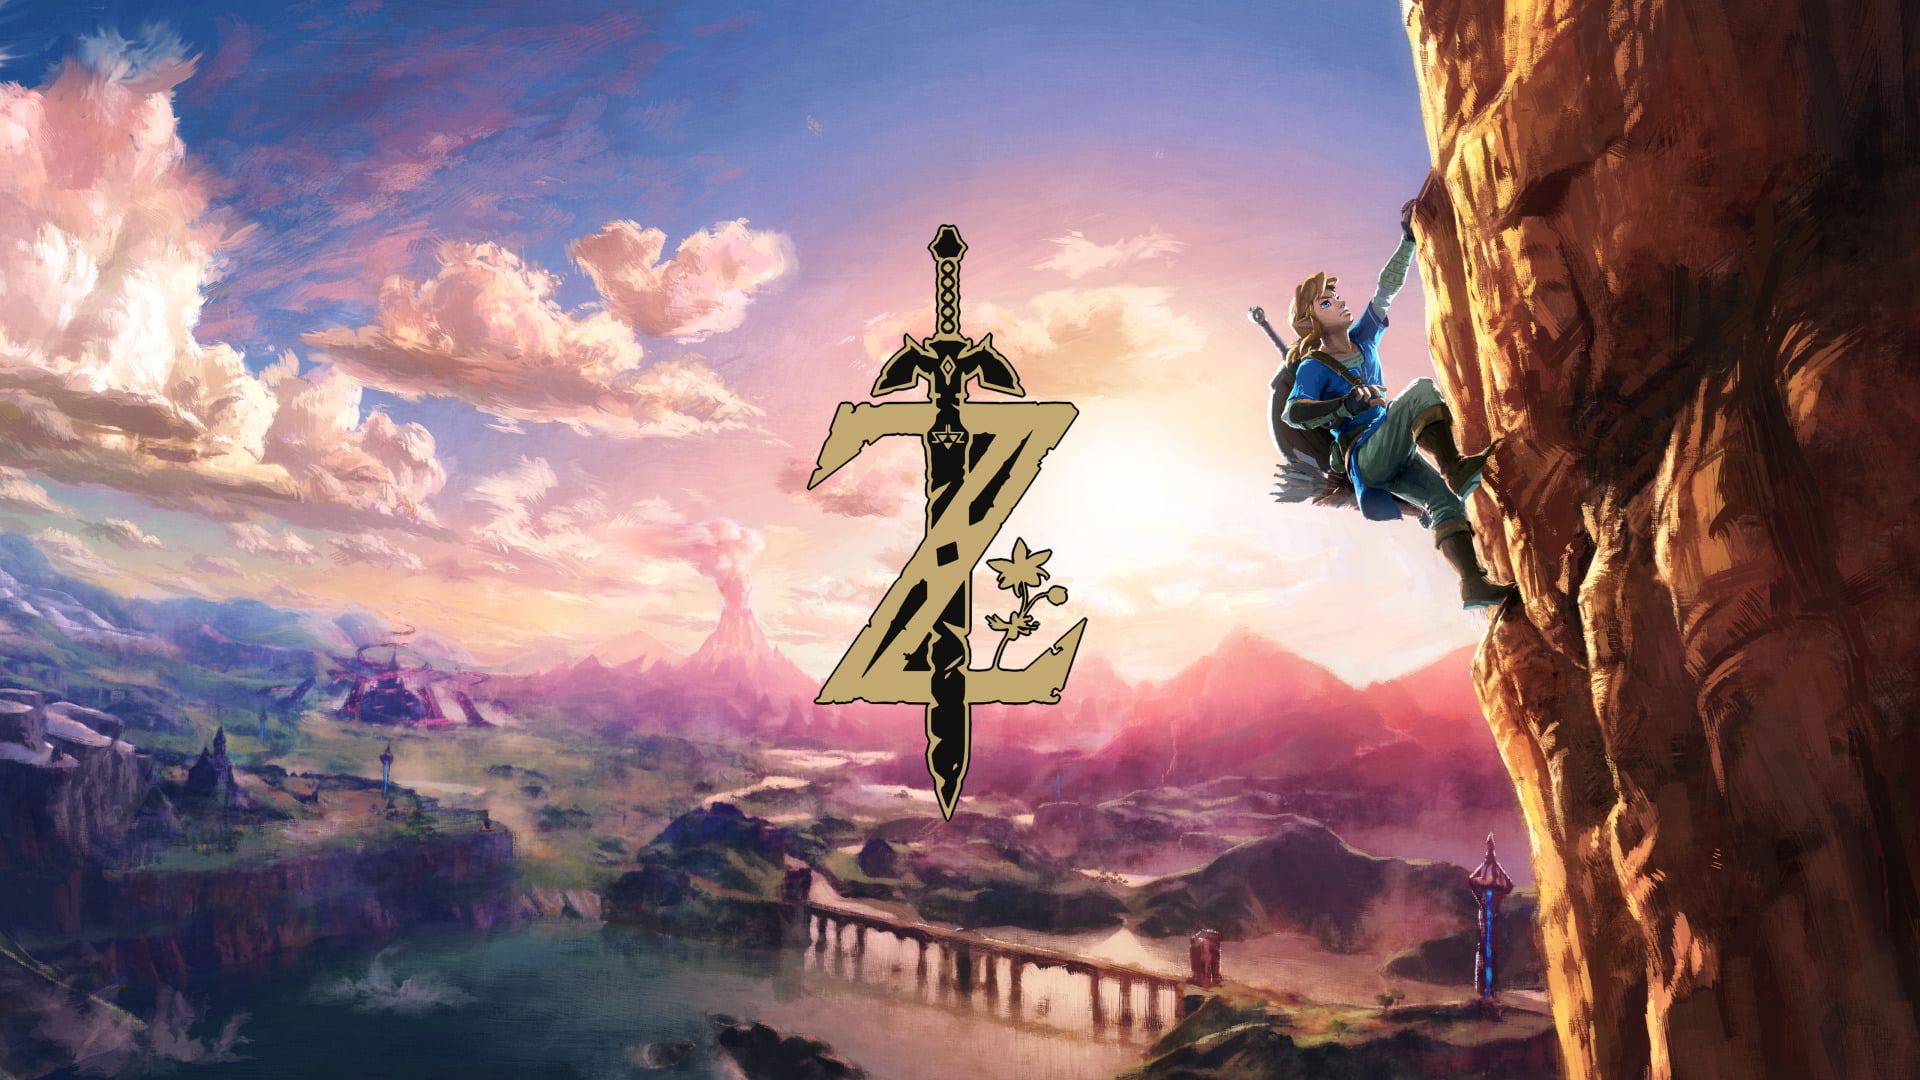 Zelda, The Legend of Zelda: Breath of the Wild, Hyrule, Link